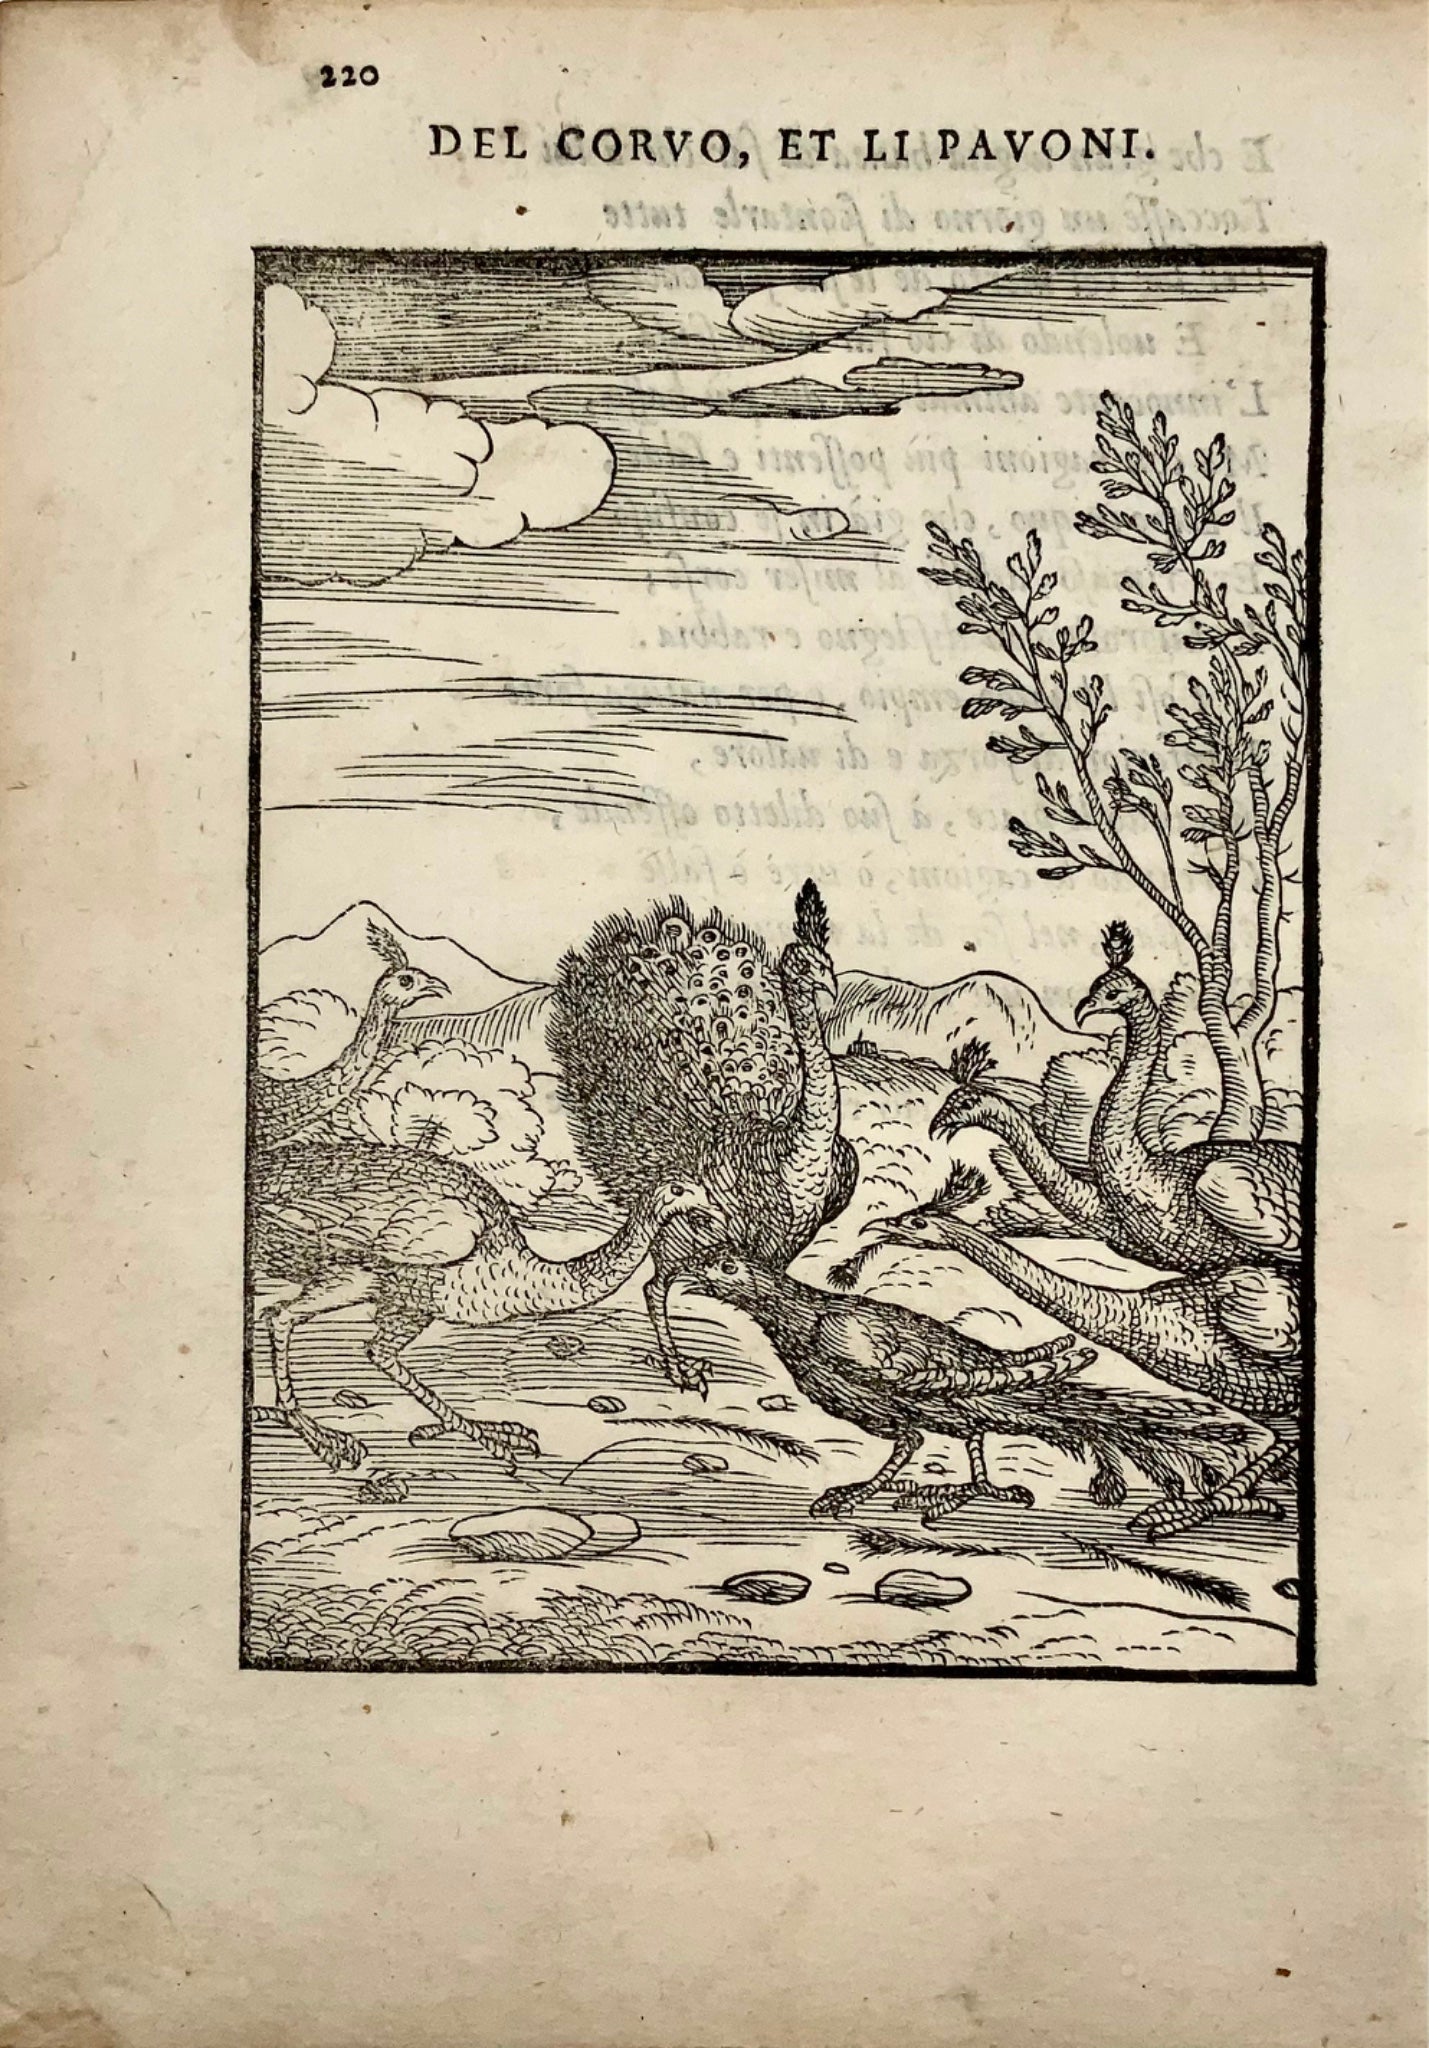 Gio. M. Verdizzotti (1525-1600); I pavoni e il corvo - foglia xilografia 1570 - Favole